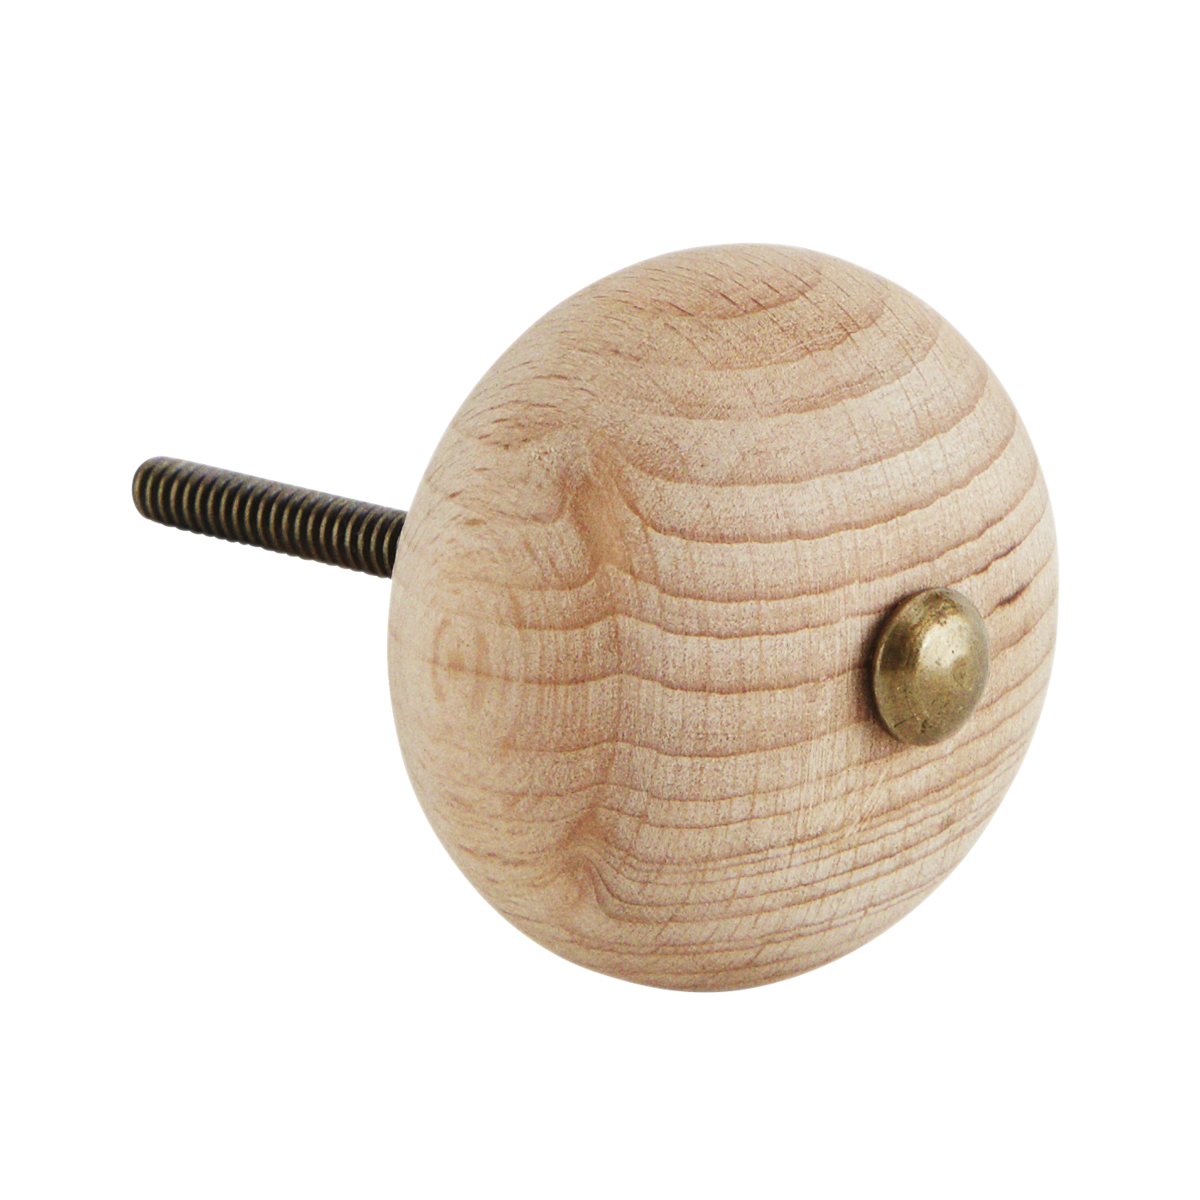 Wooden doorknob